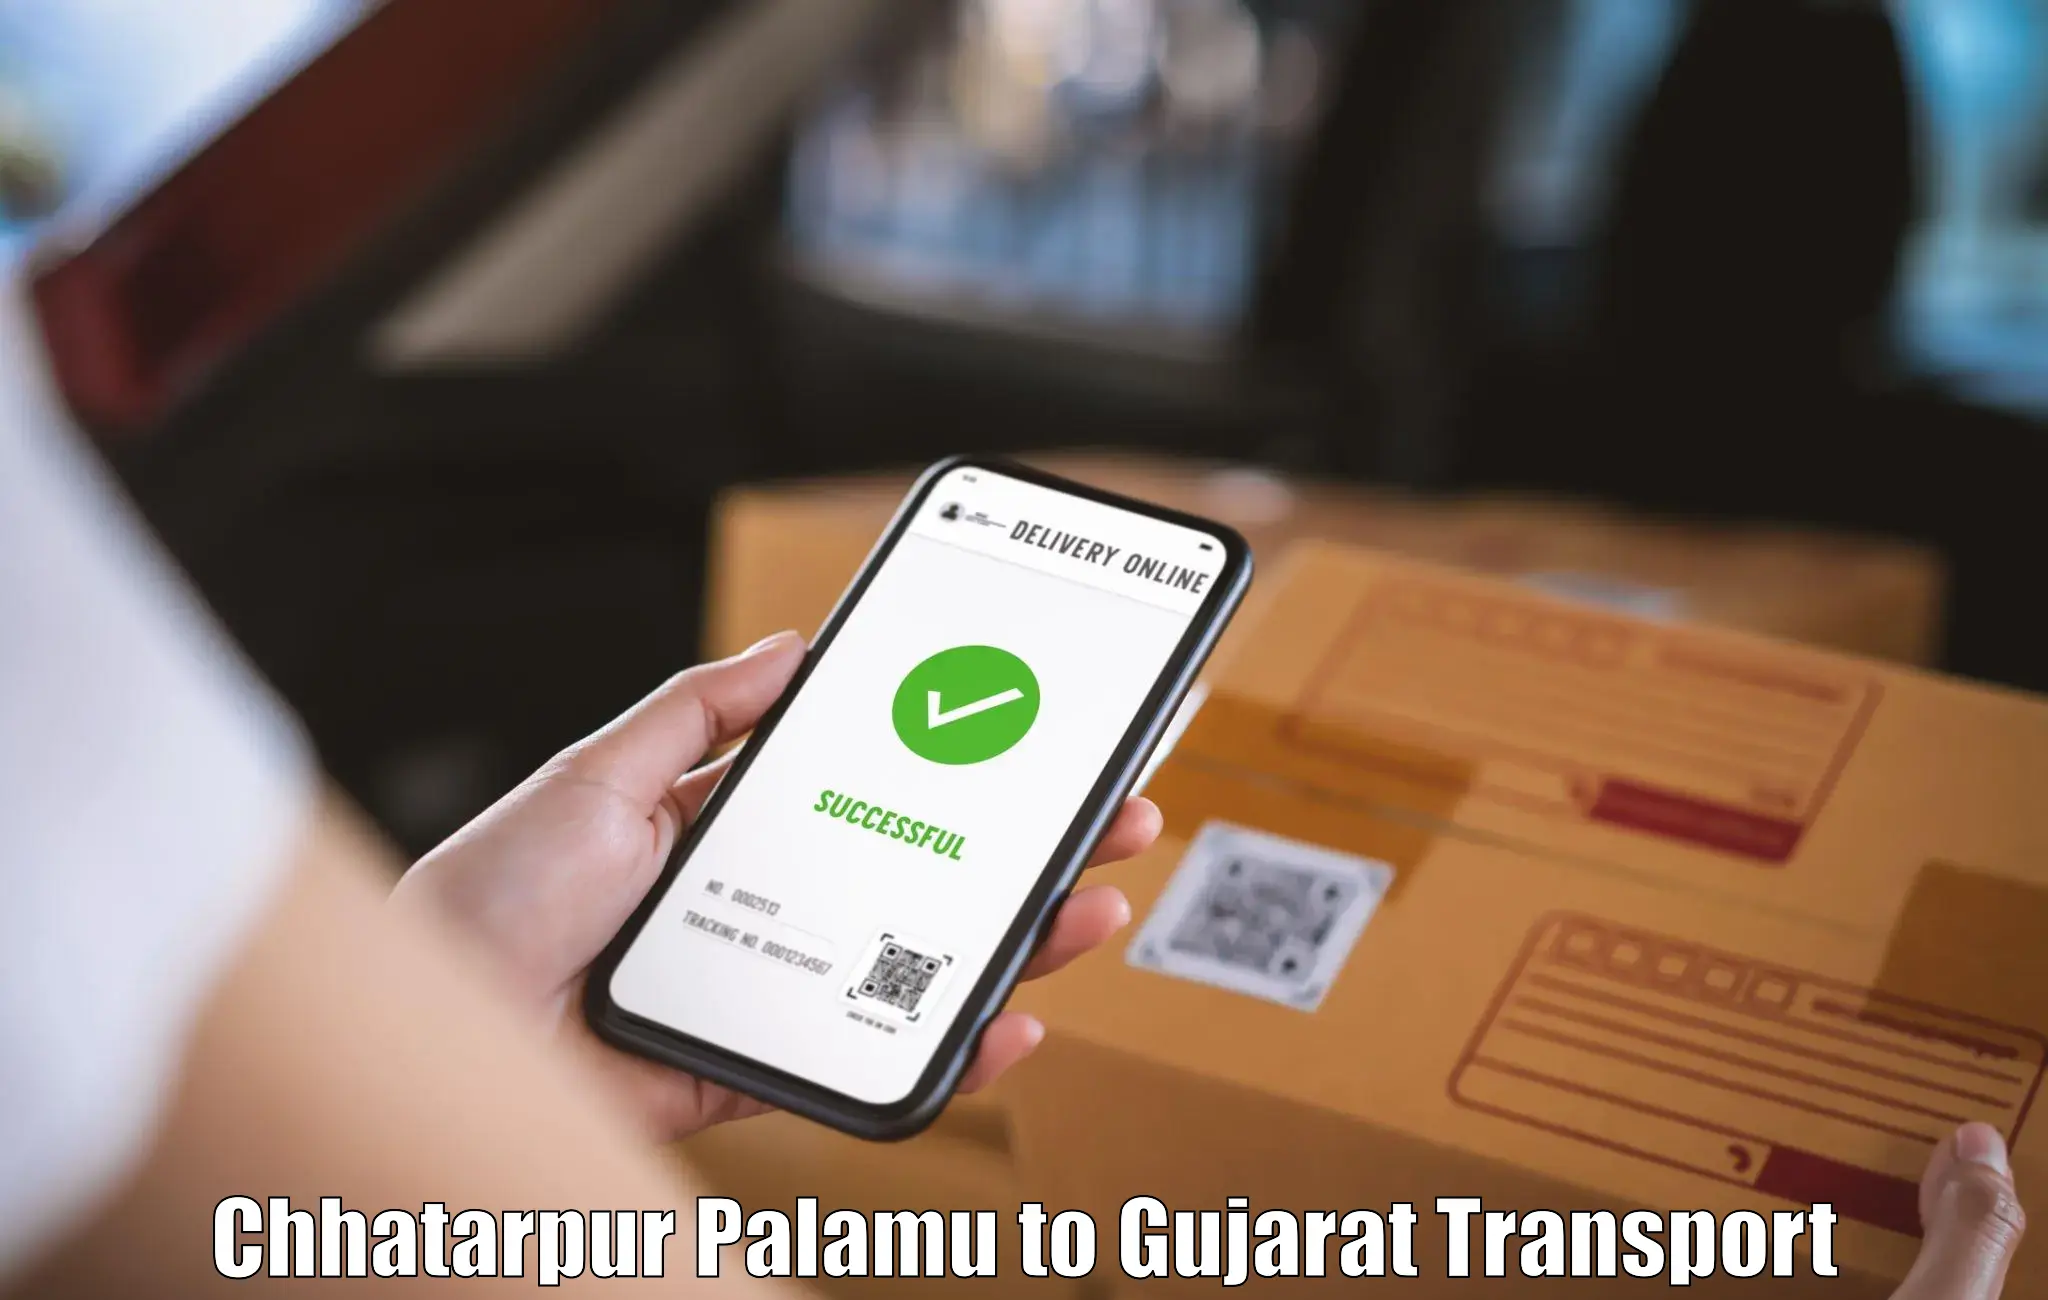 Interstate transport services Chhatarpur Palamu to Kalol